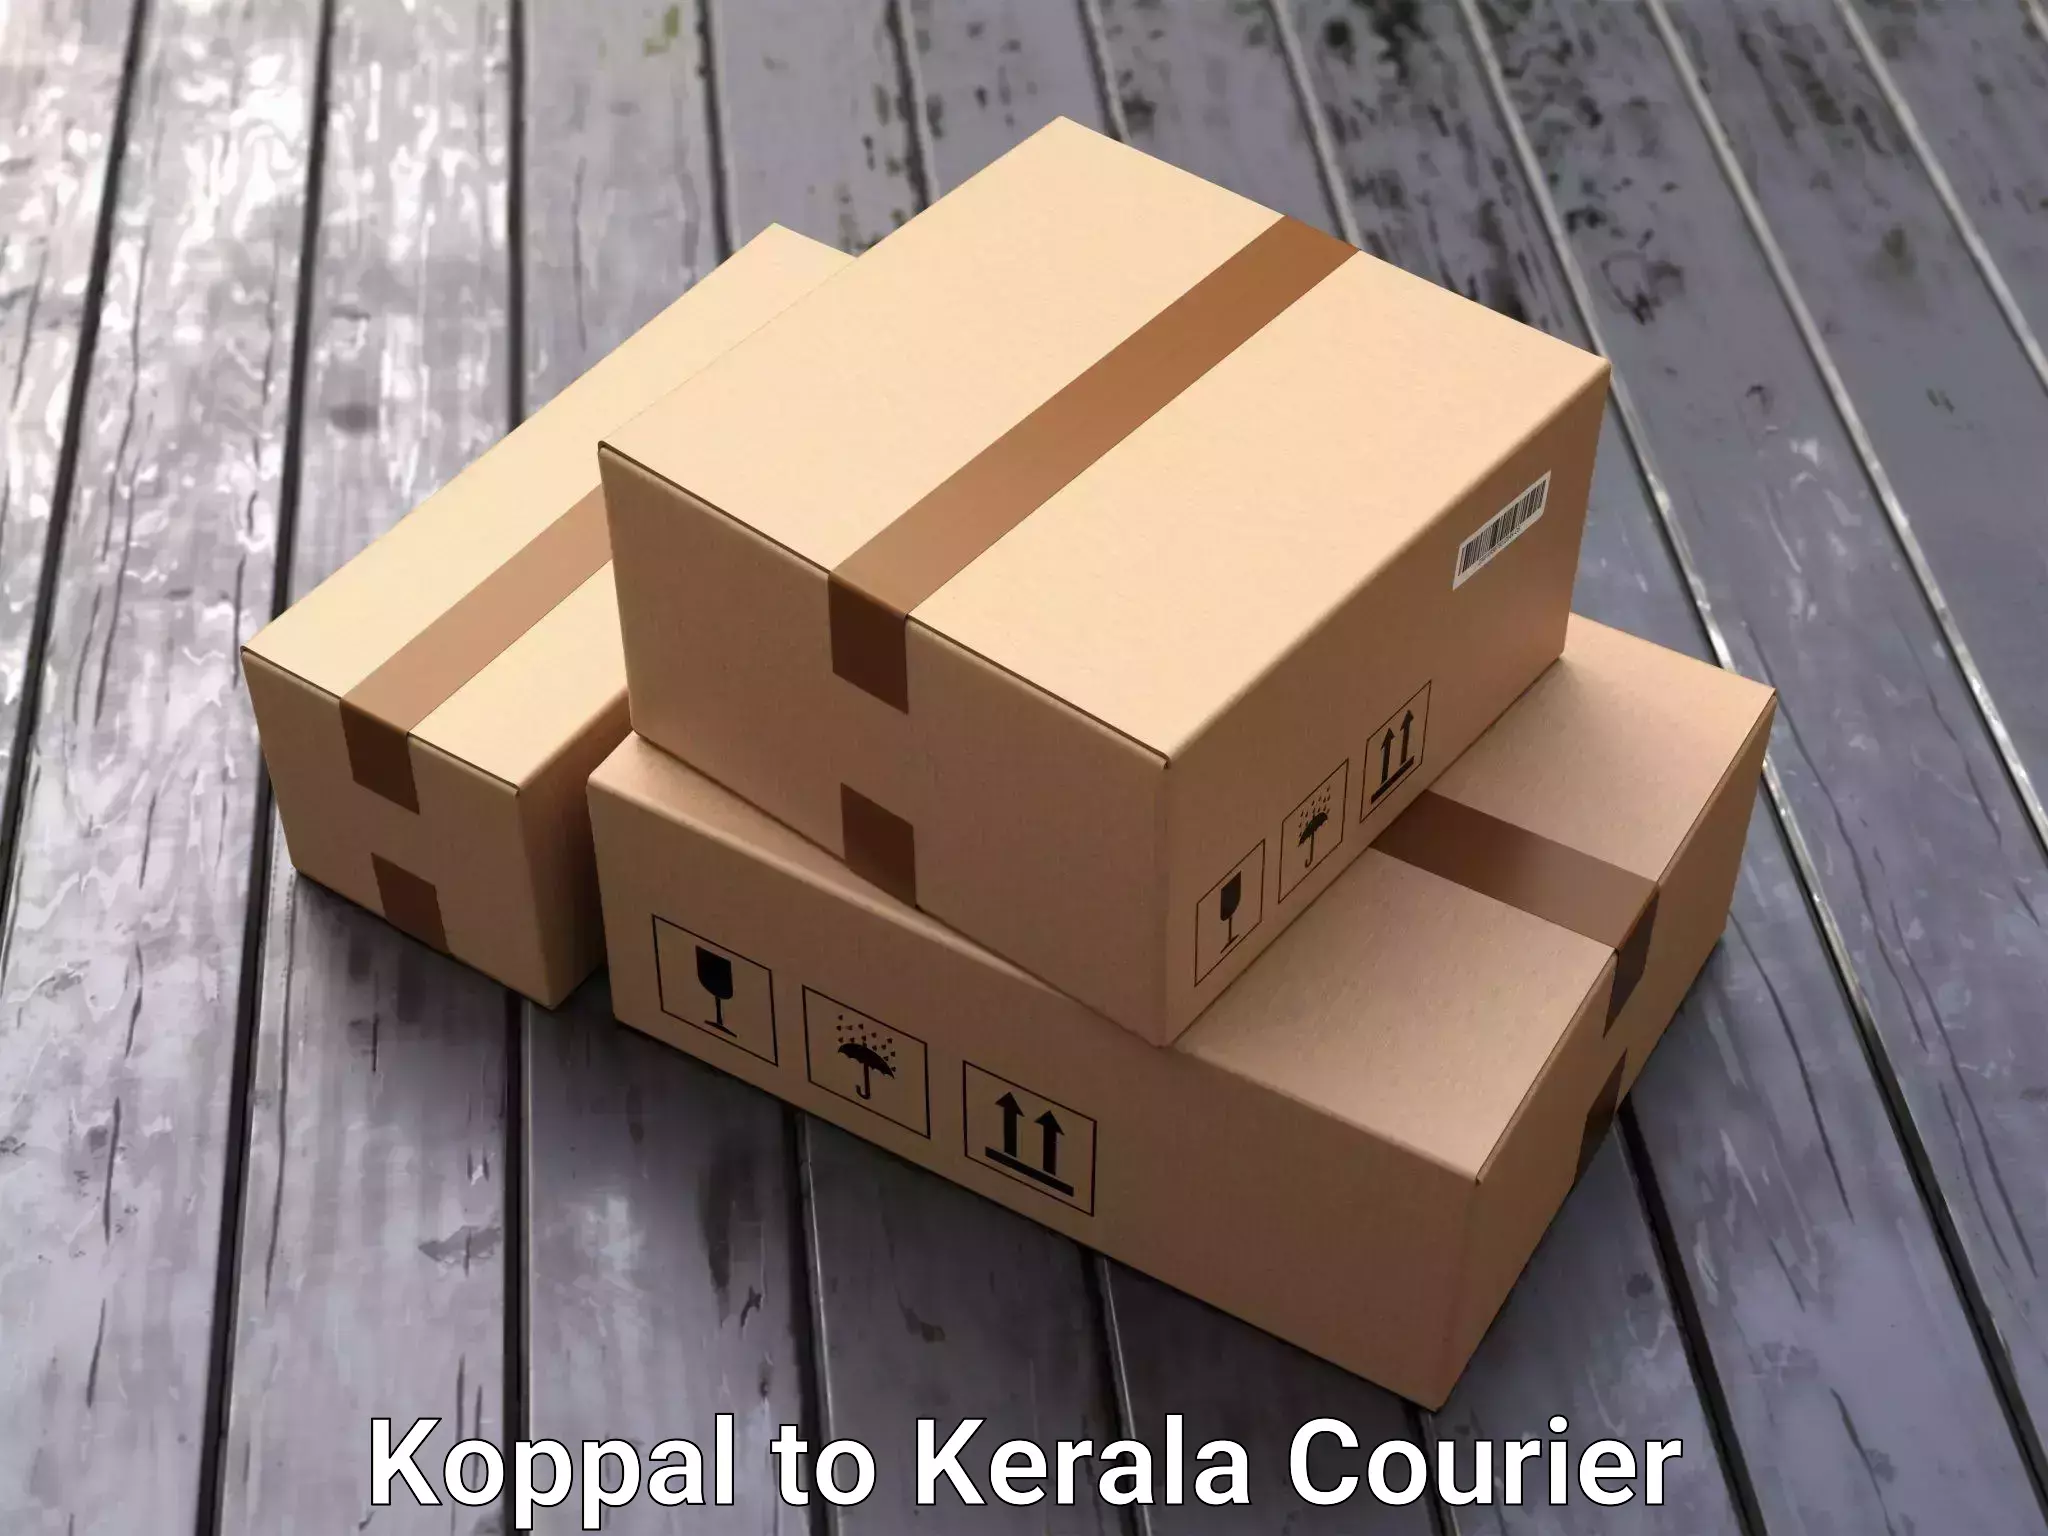 Furniture transport experts Koppal to Palai